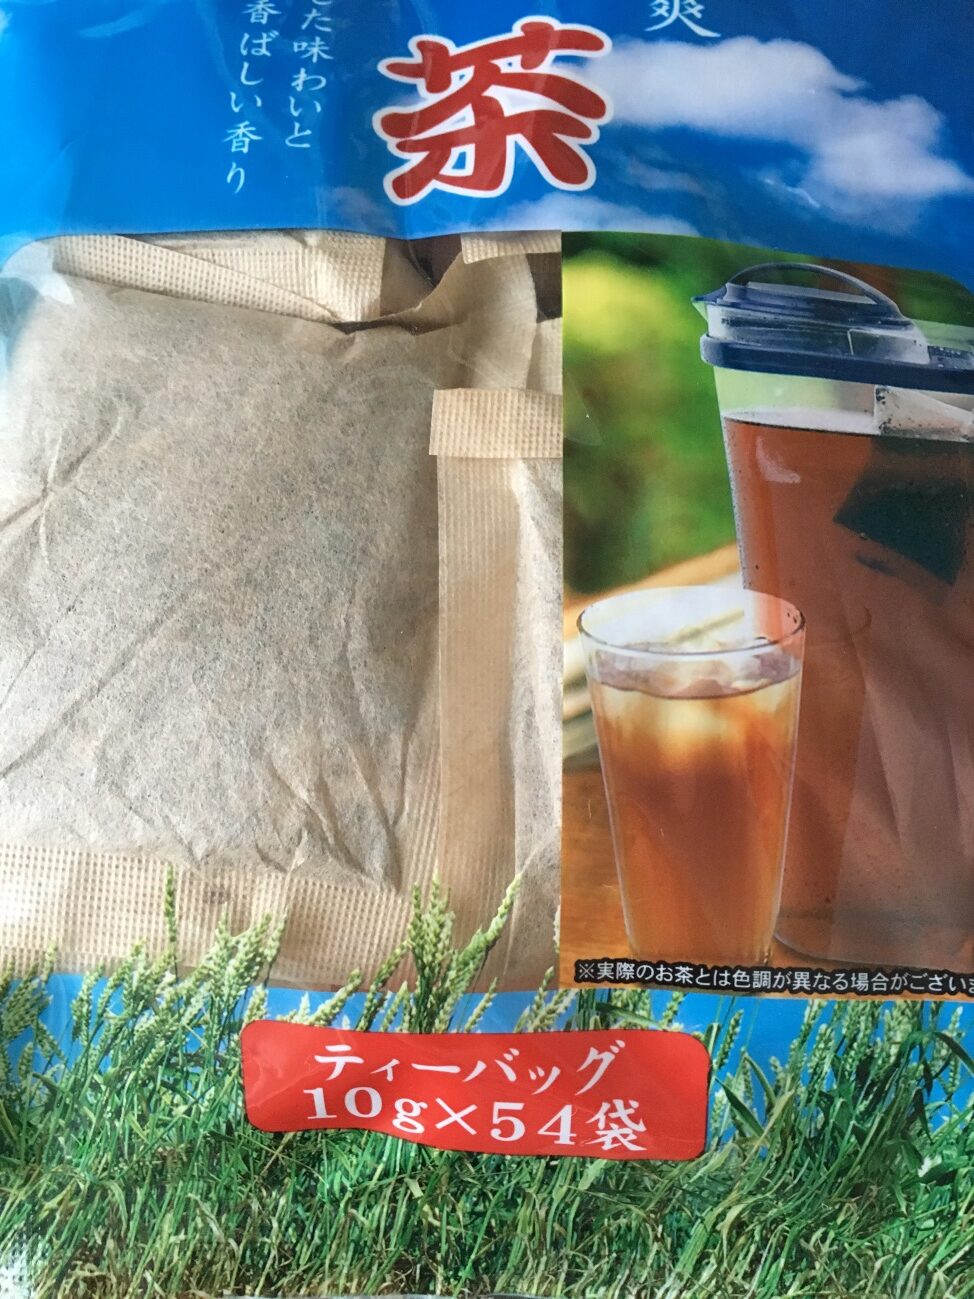 業務スーパーの麦茶の内容量ティーバッグ10g×54袋の表記